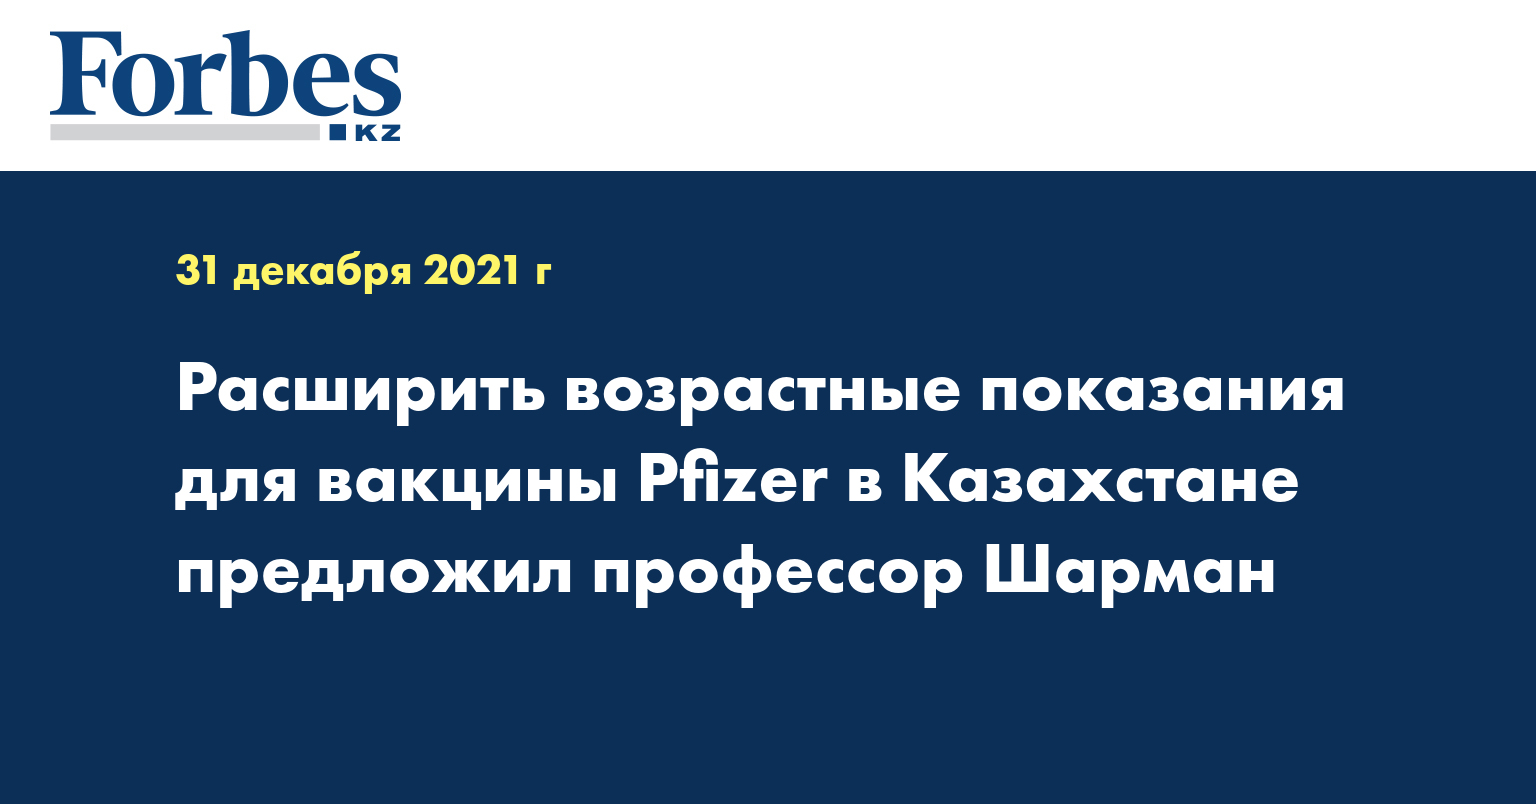 Расширить возрастные показания для вакцины Pfizer в Казахстане предложил профессор Шарман